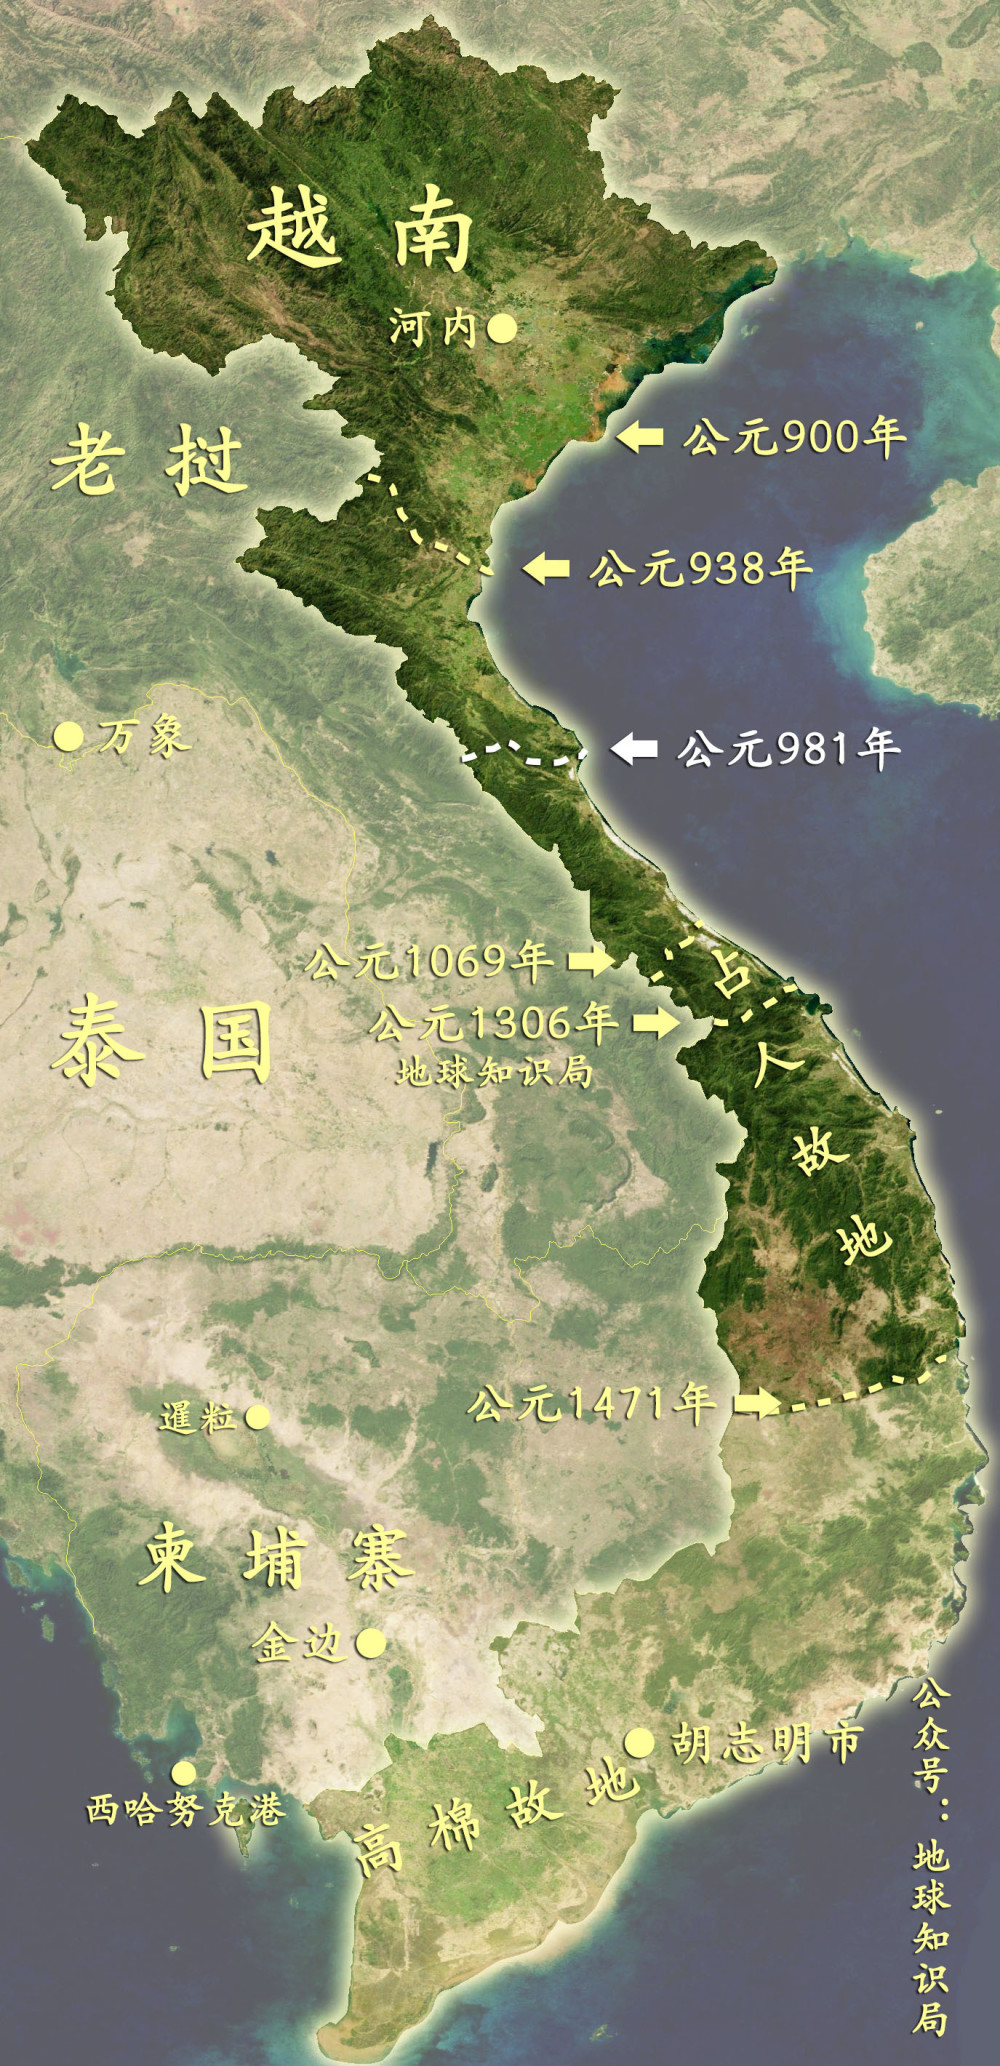 占婆沿海只是一个绕不开的跳板,从南面绕过长山山脉,进入西面湄公河